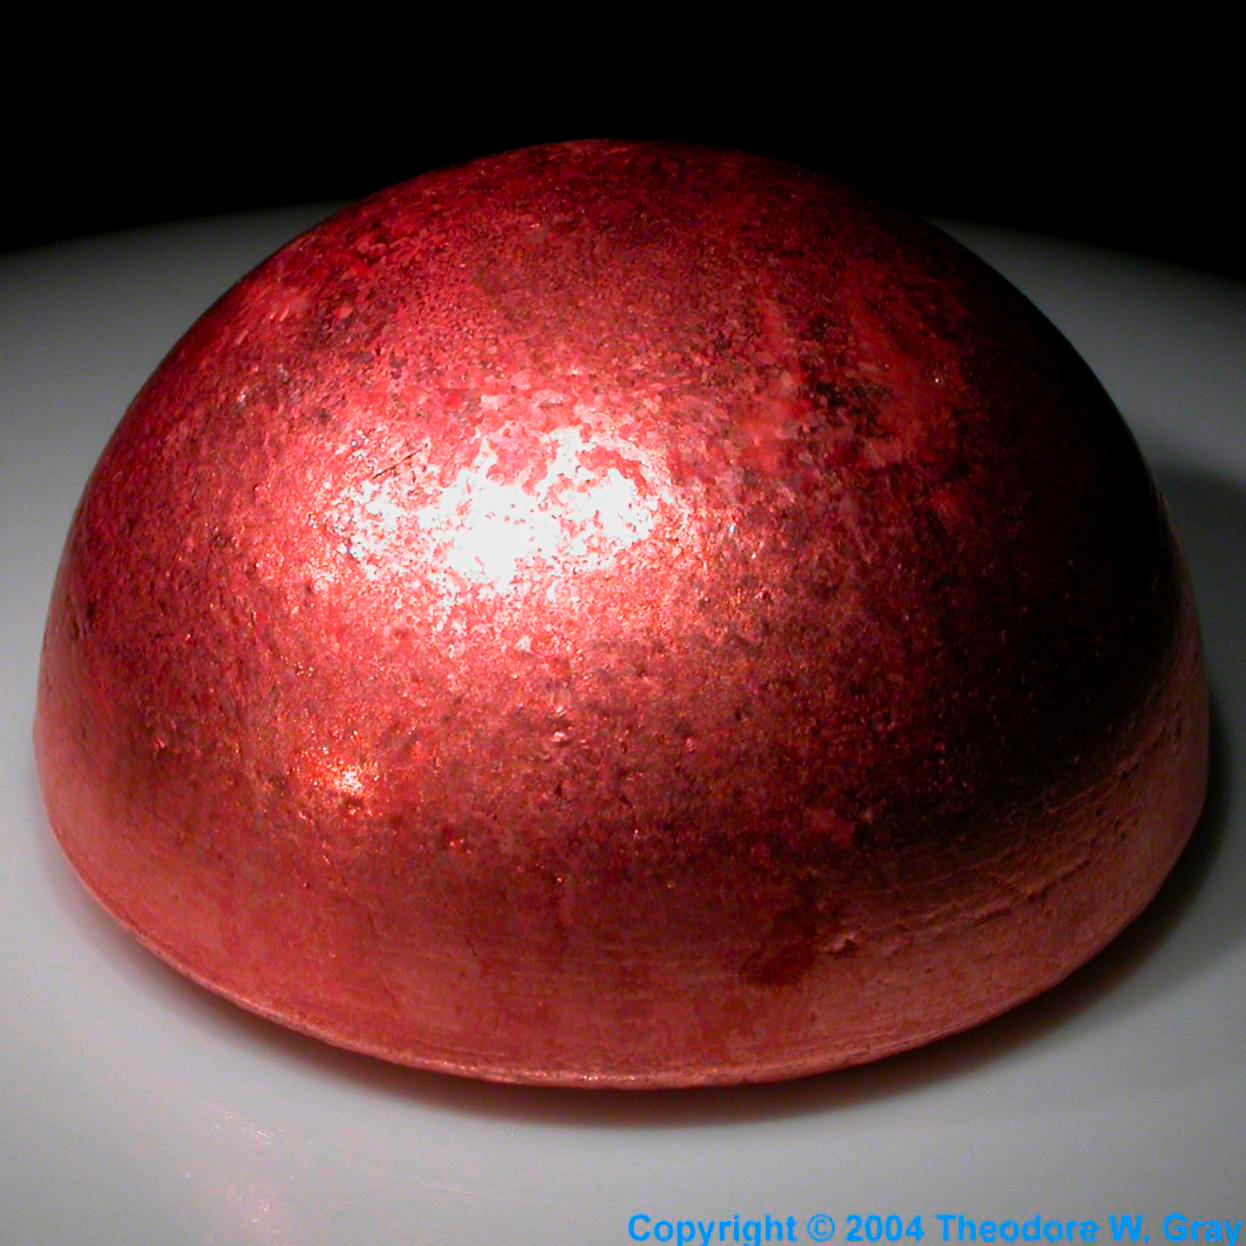 Copper Museum-grade sample